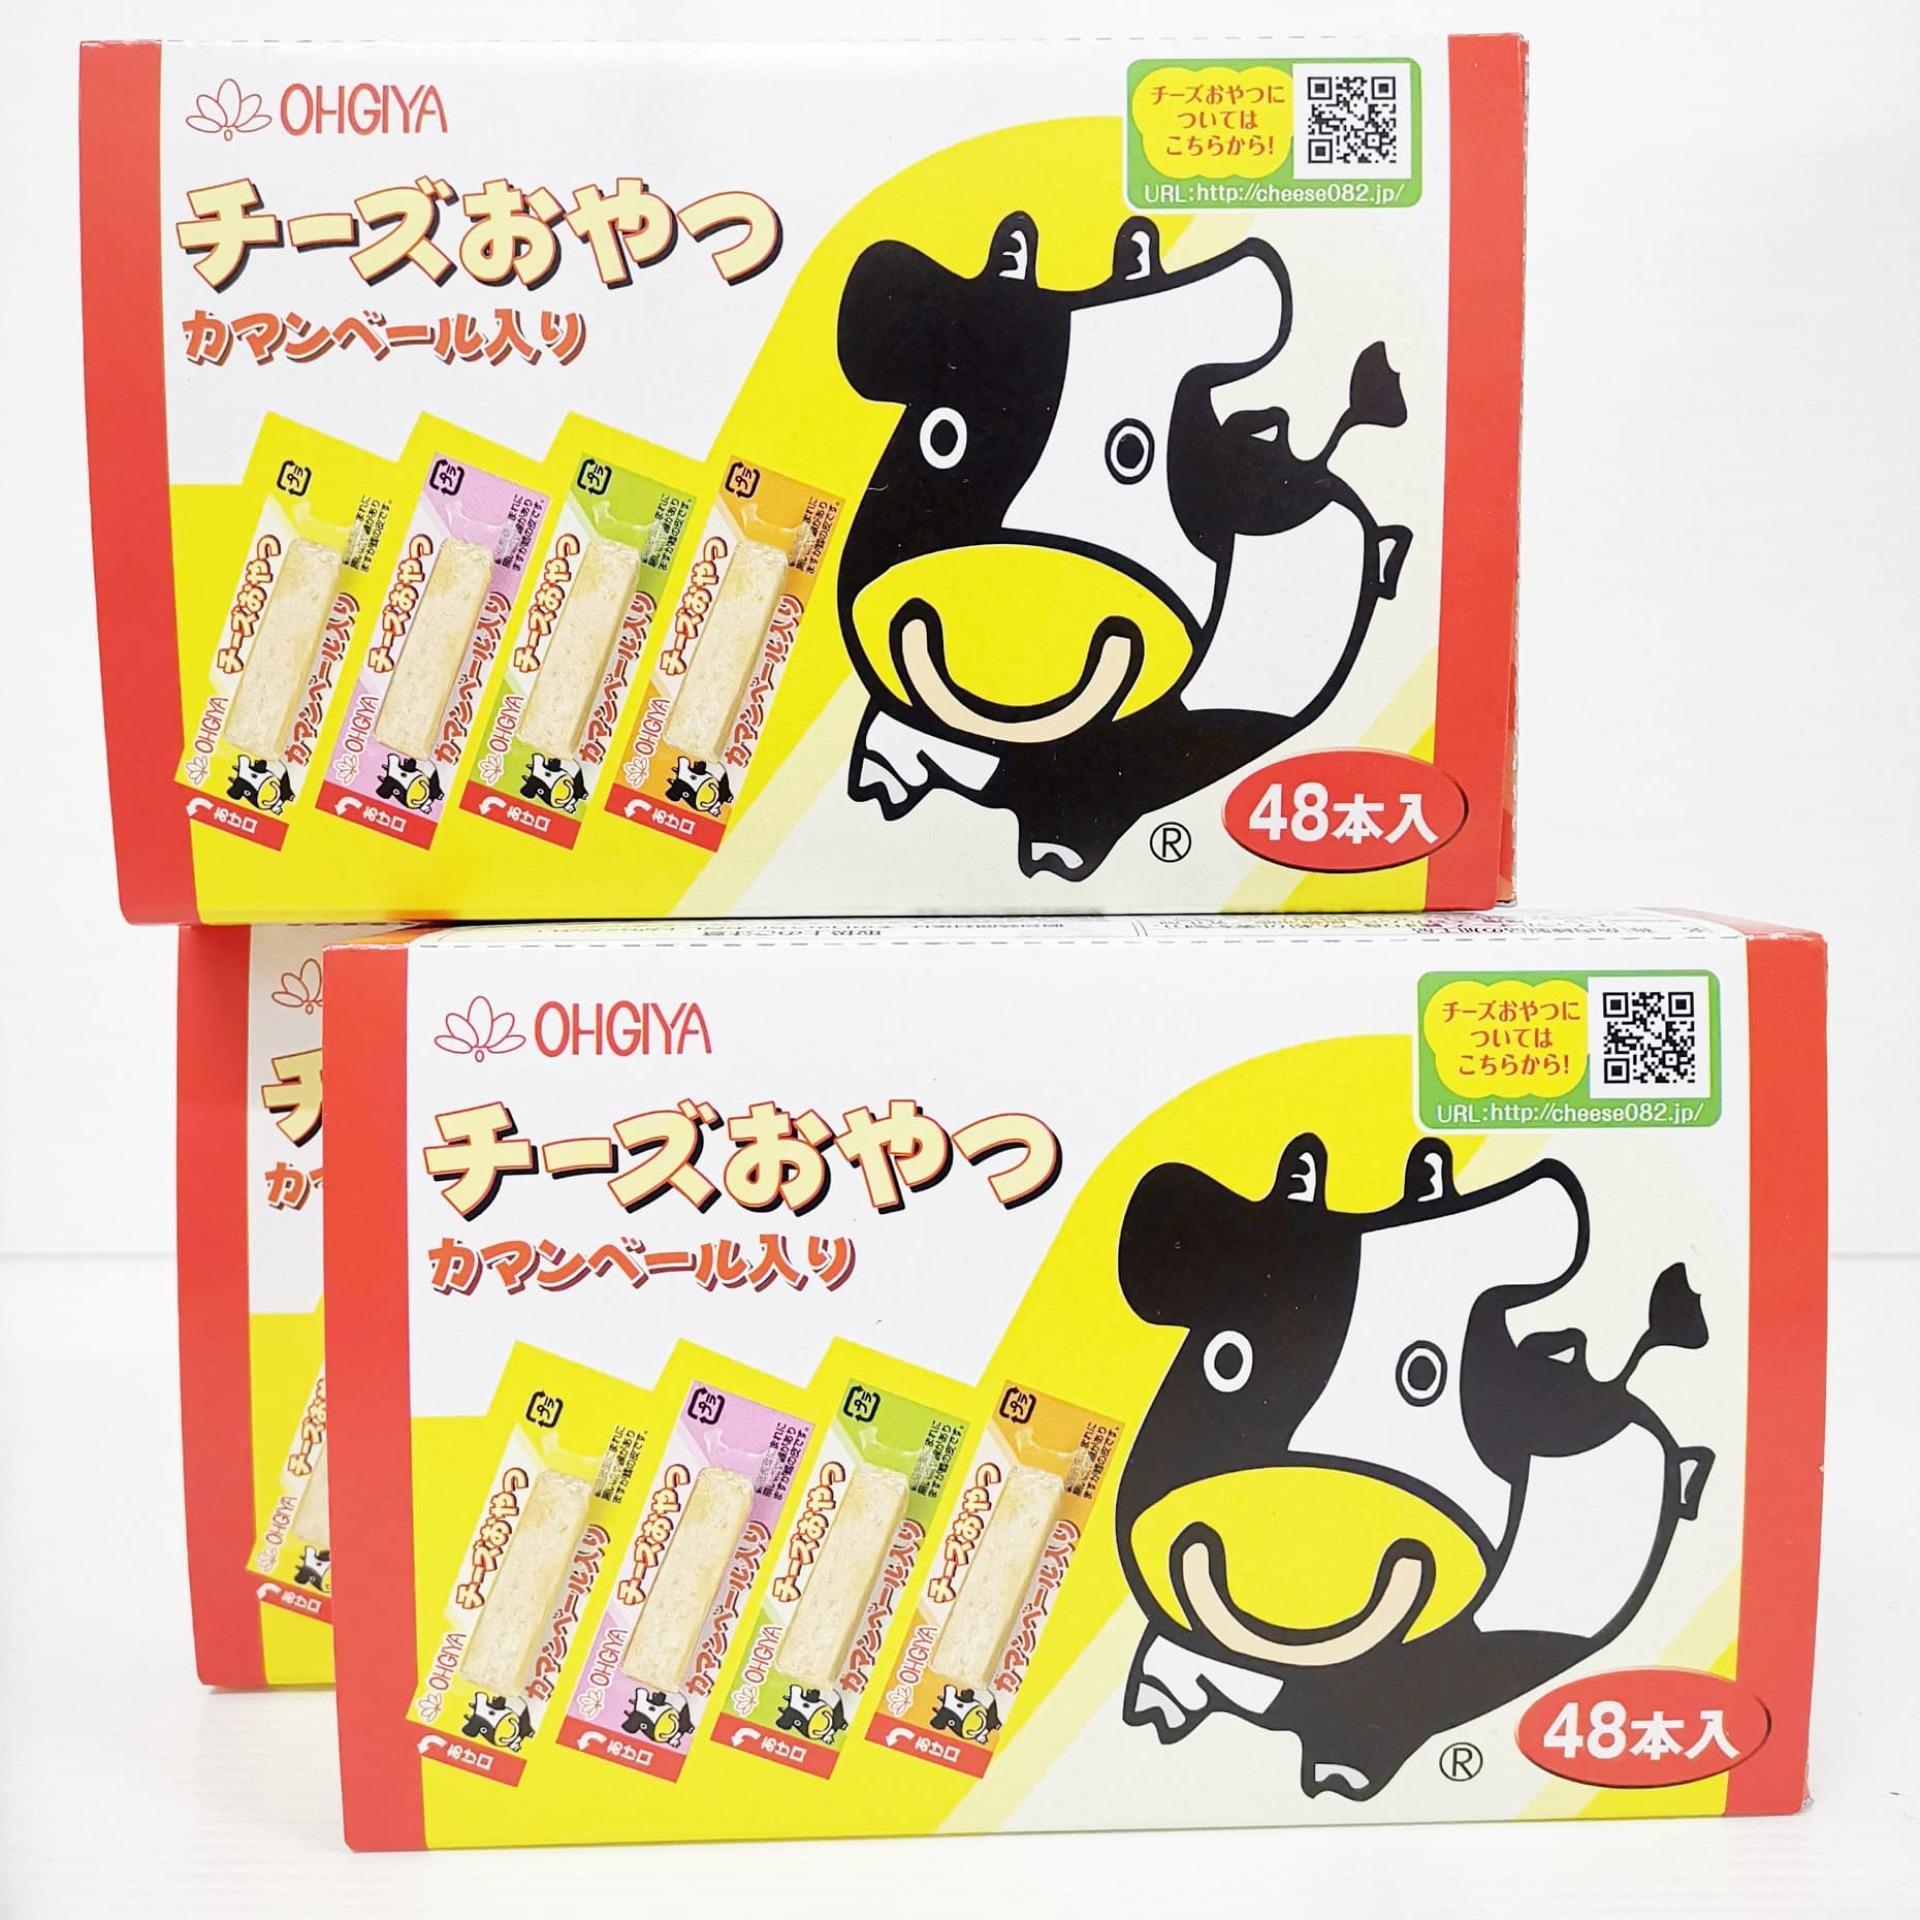 ชีววัว hogiya ชีสทานเล่นนำเข้าจากญี่ปุ่น